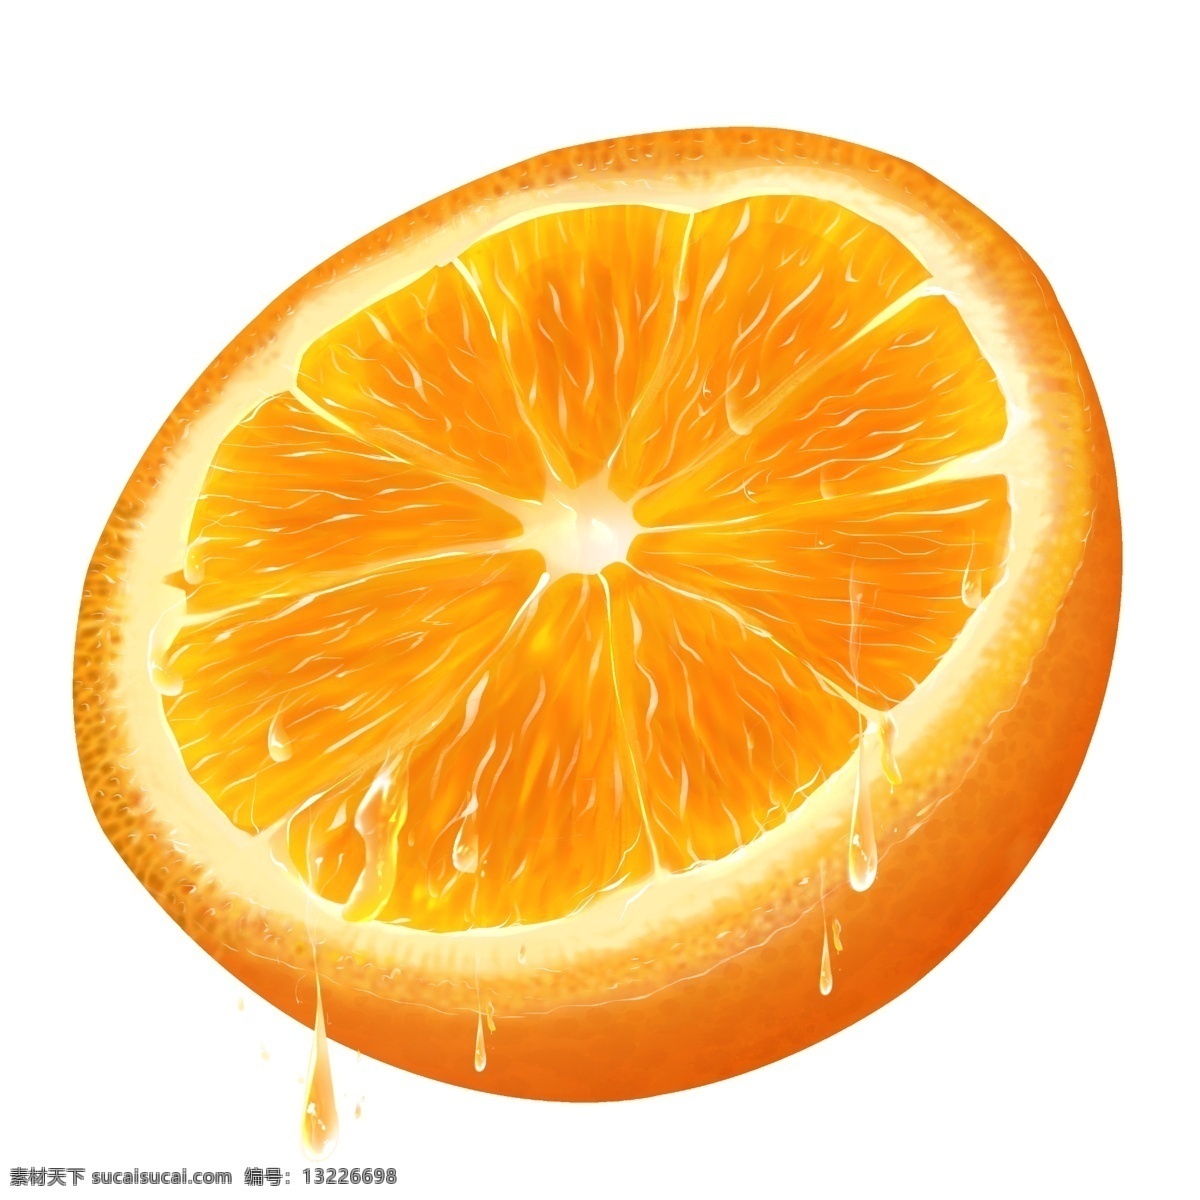 切片橙子 橙子 水果 果汁 水果素材 新鲜水果 新鲜橙子 橘子